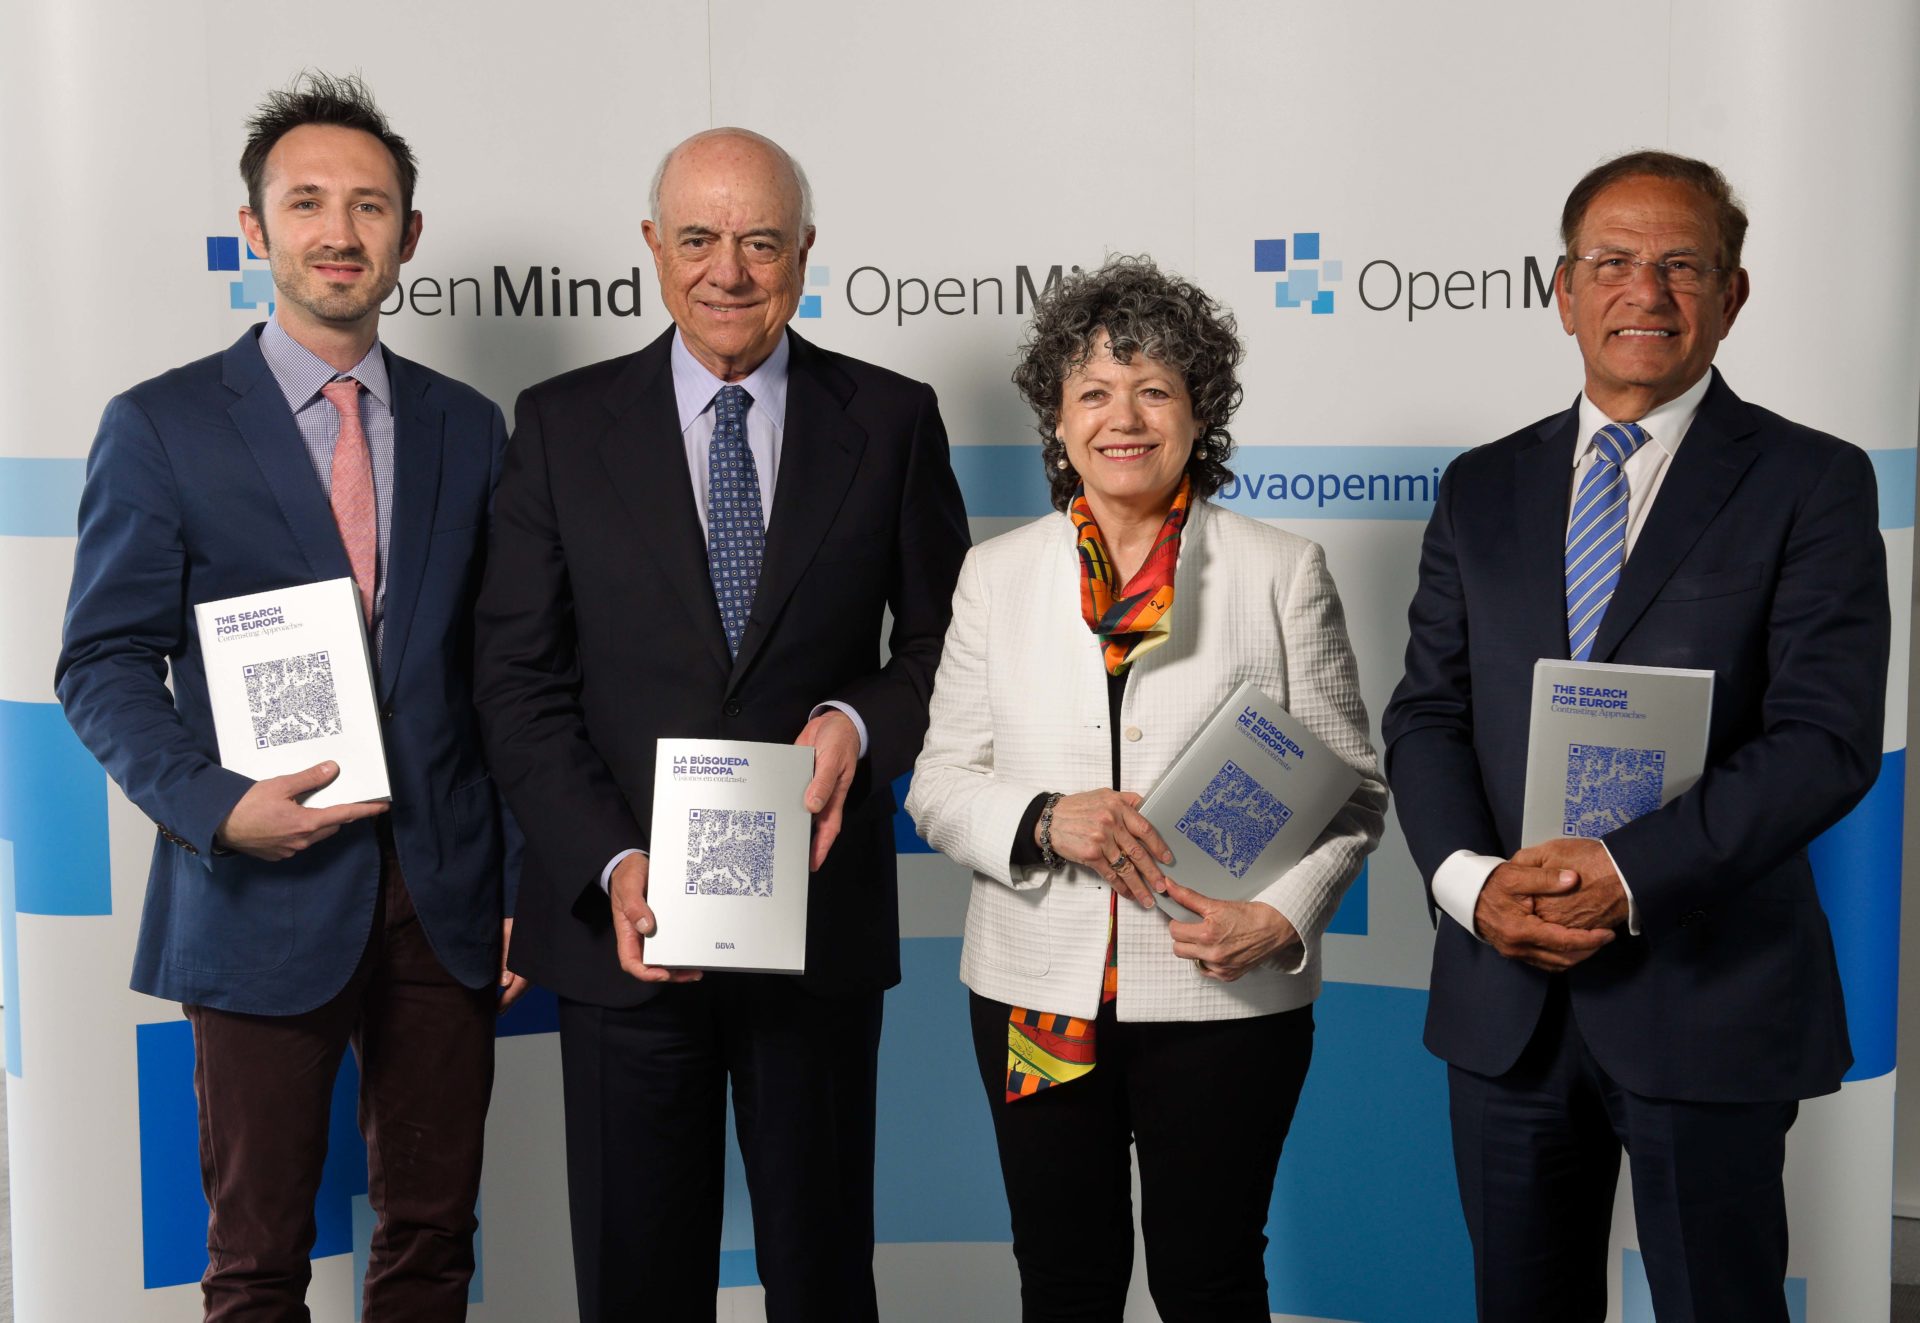 Fotografía de Christopher Bickerton; Francisco González, presidente de BBVA; Vivien Ann Schmidt y Bichara Khader, autores del libro de OpenMind